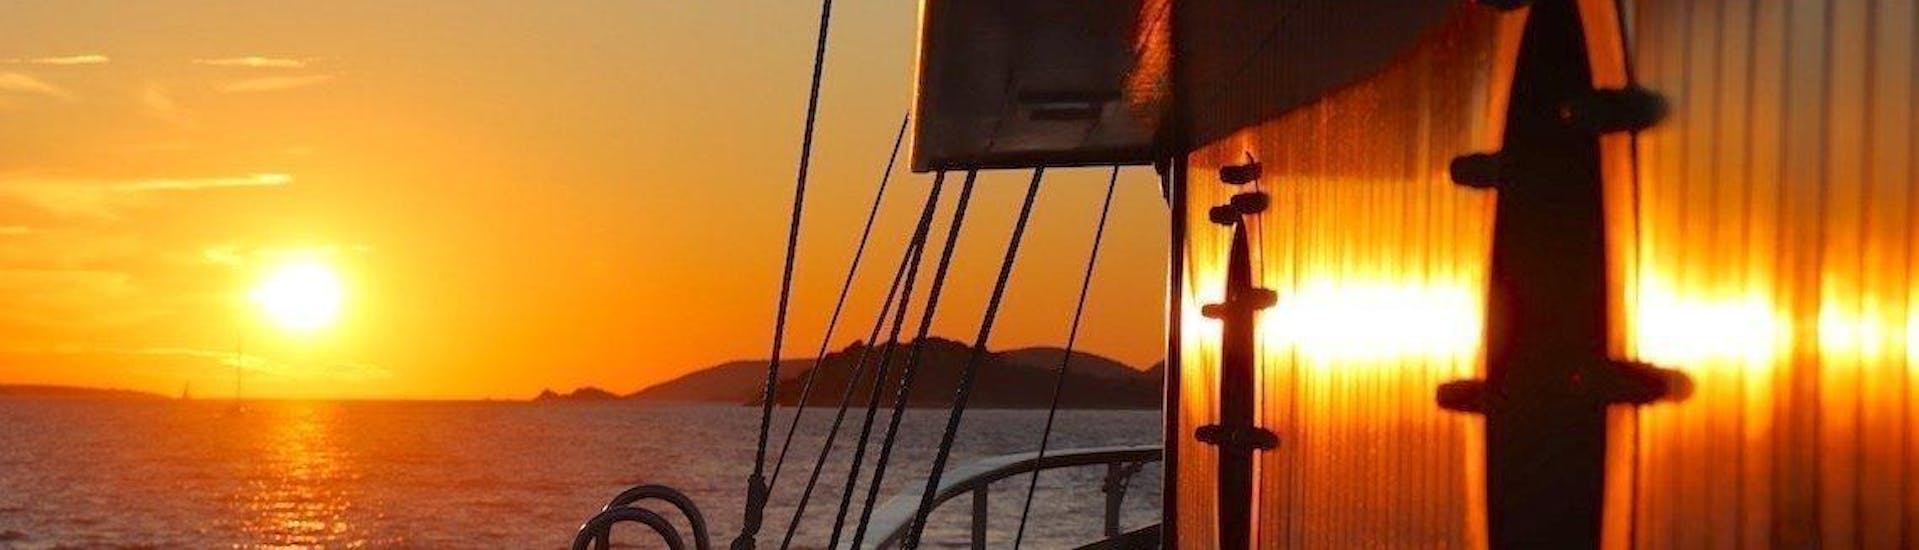 Balade en bateau au coucher du soleil avec Musique live.